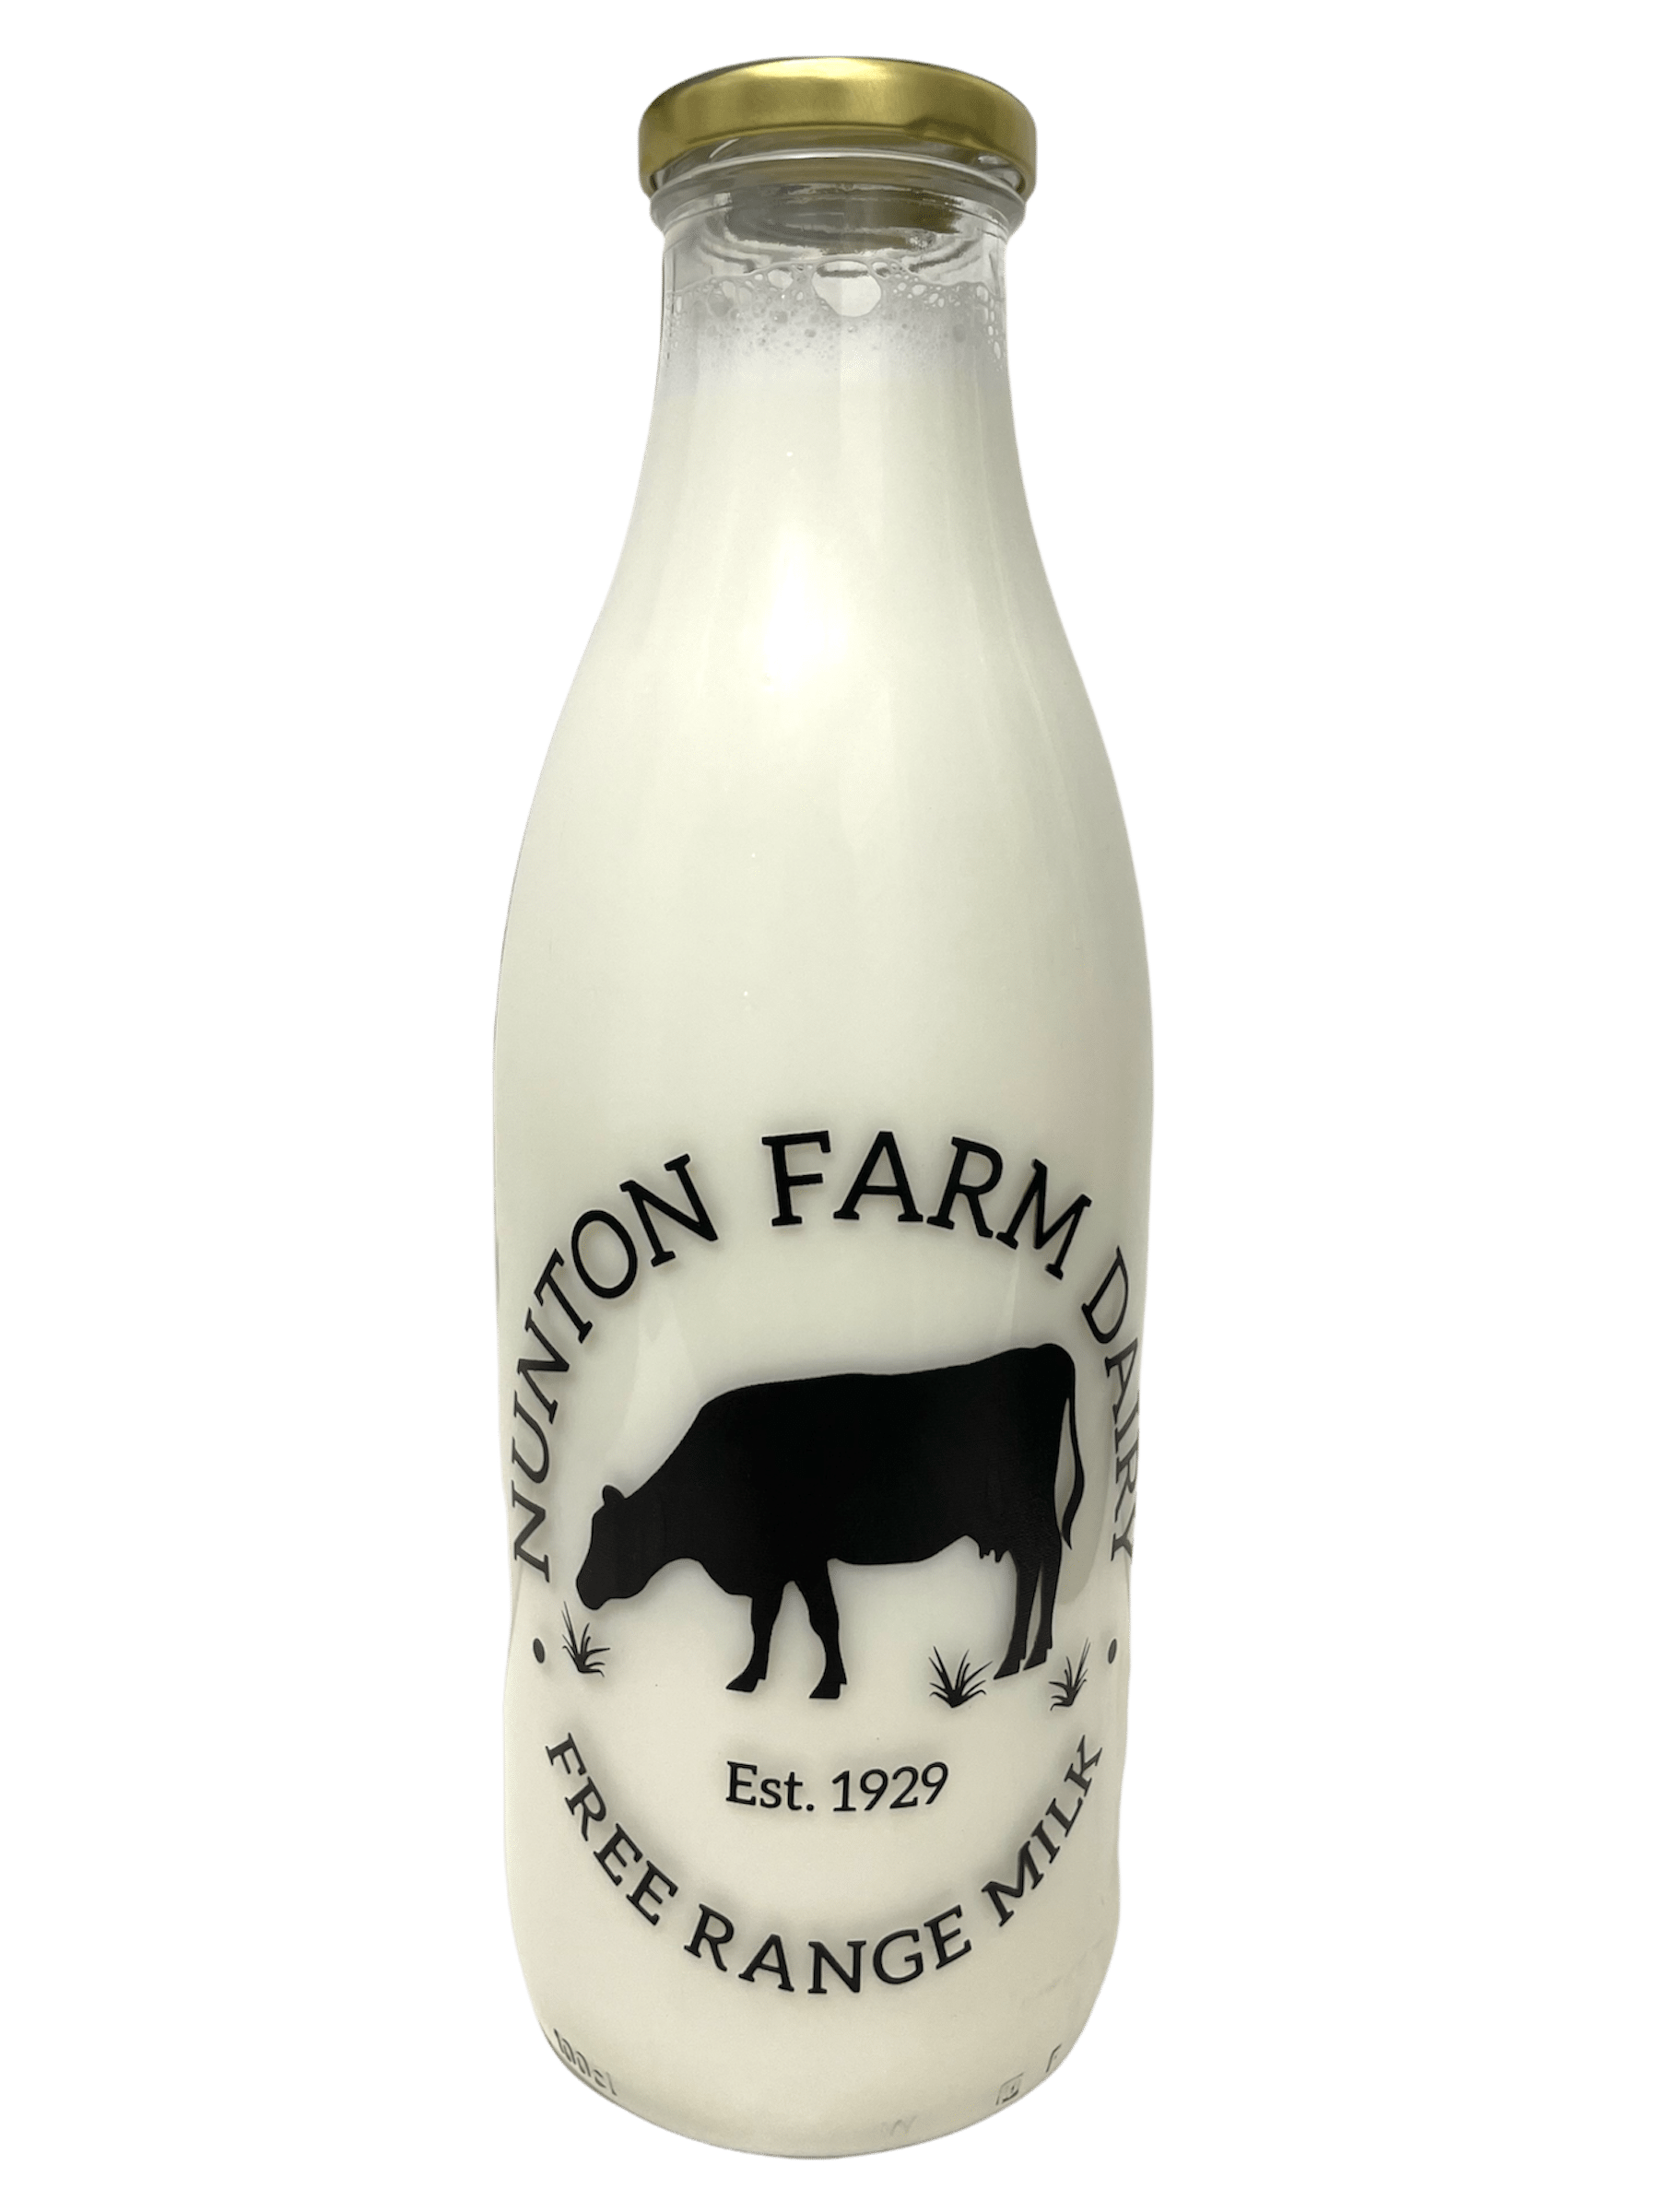 Nunton Farm - Kelis.info